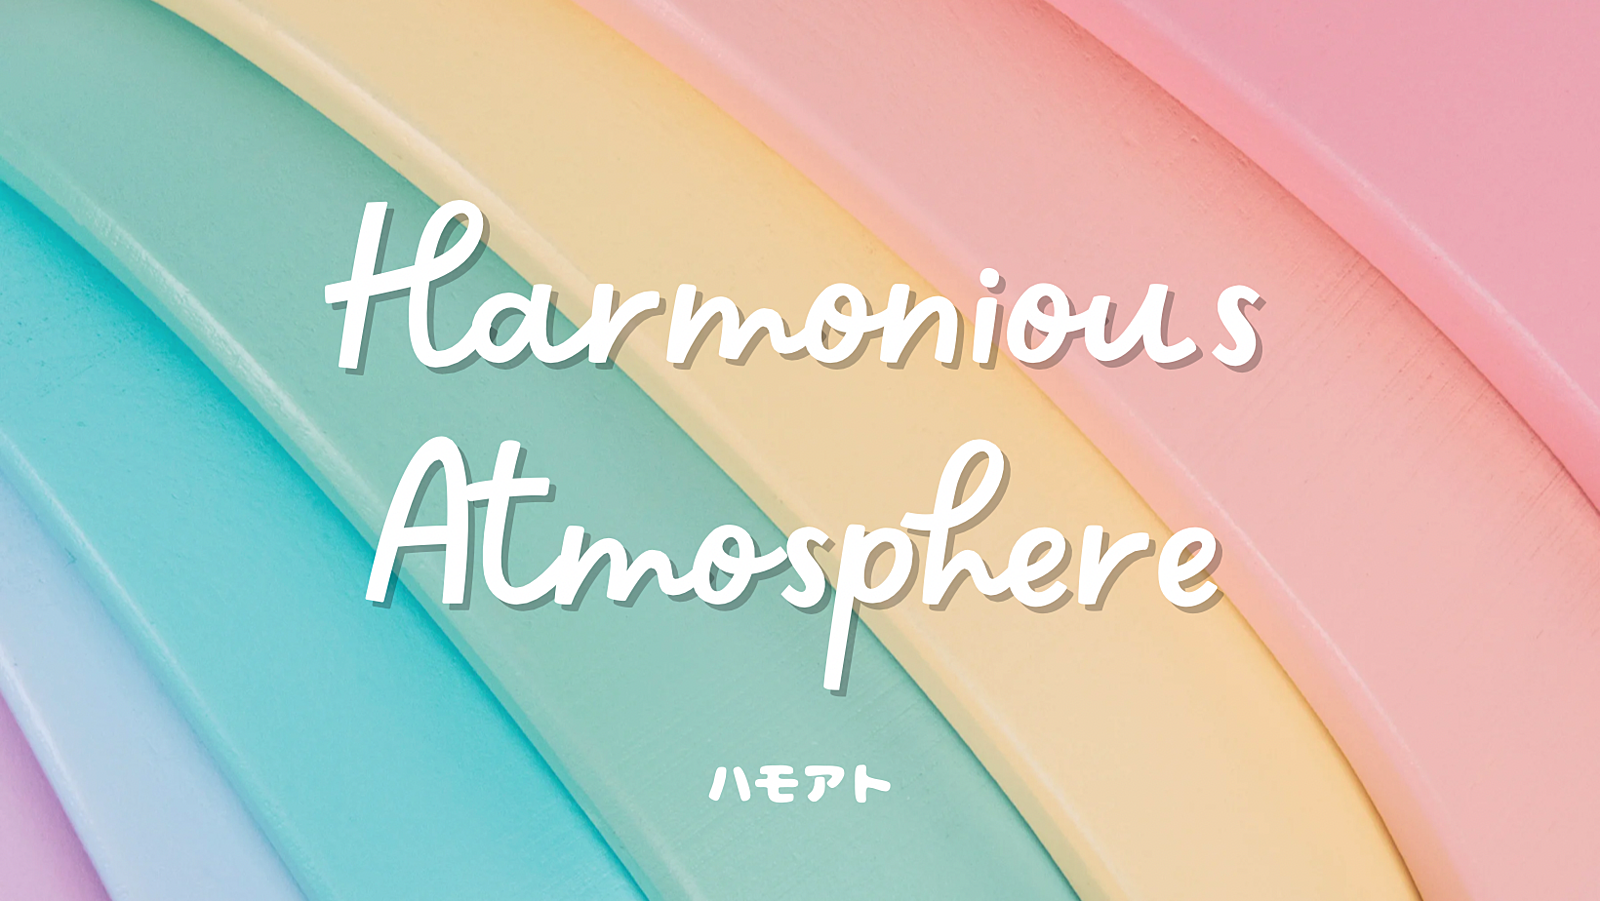 ハモアト〜Harmonious Atmosphere〜